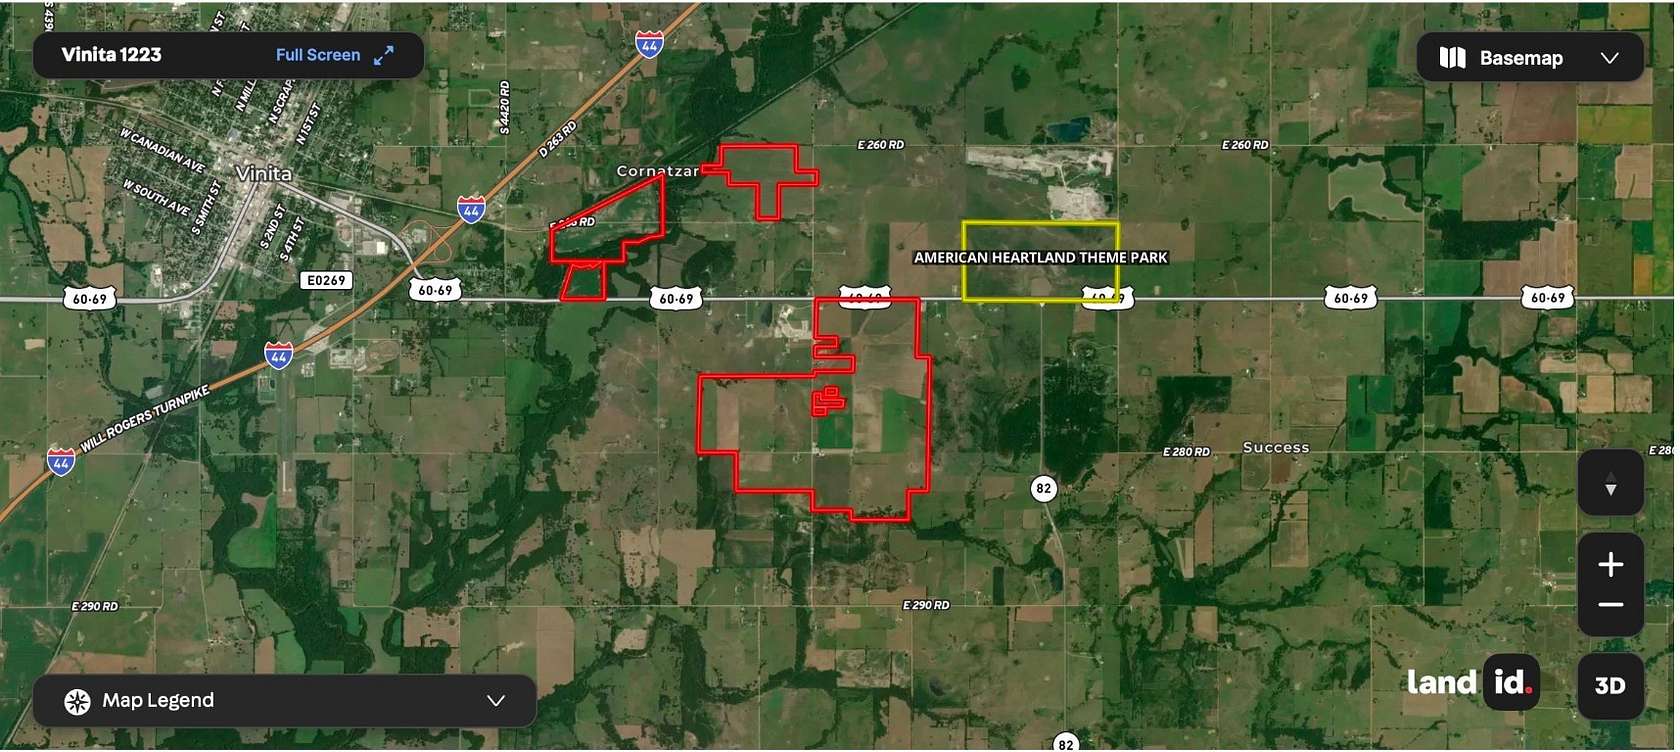 96 Acres of Land for Sale in Vinita, Oklahoma